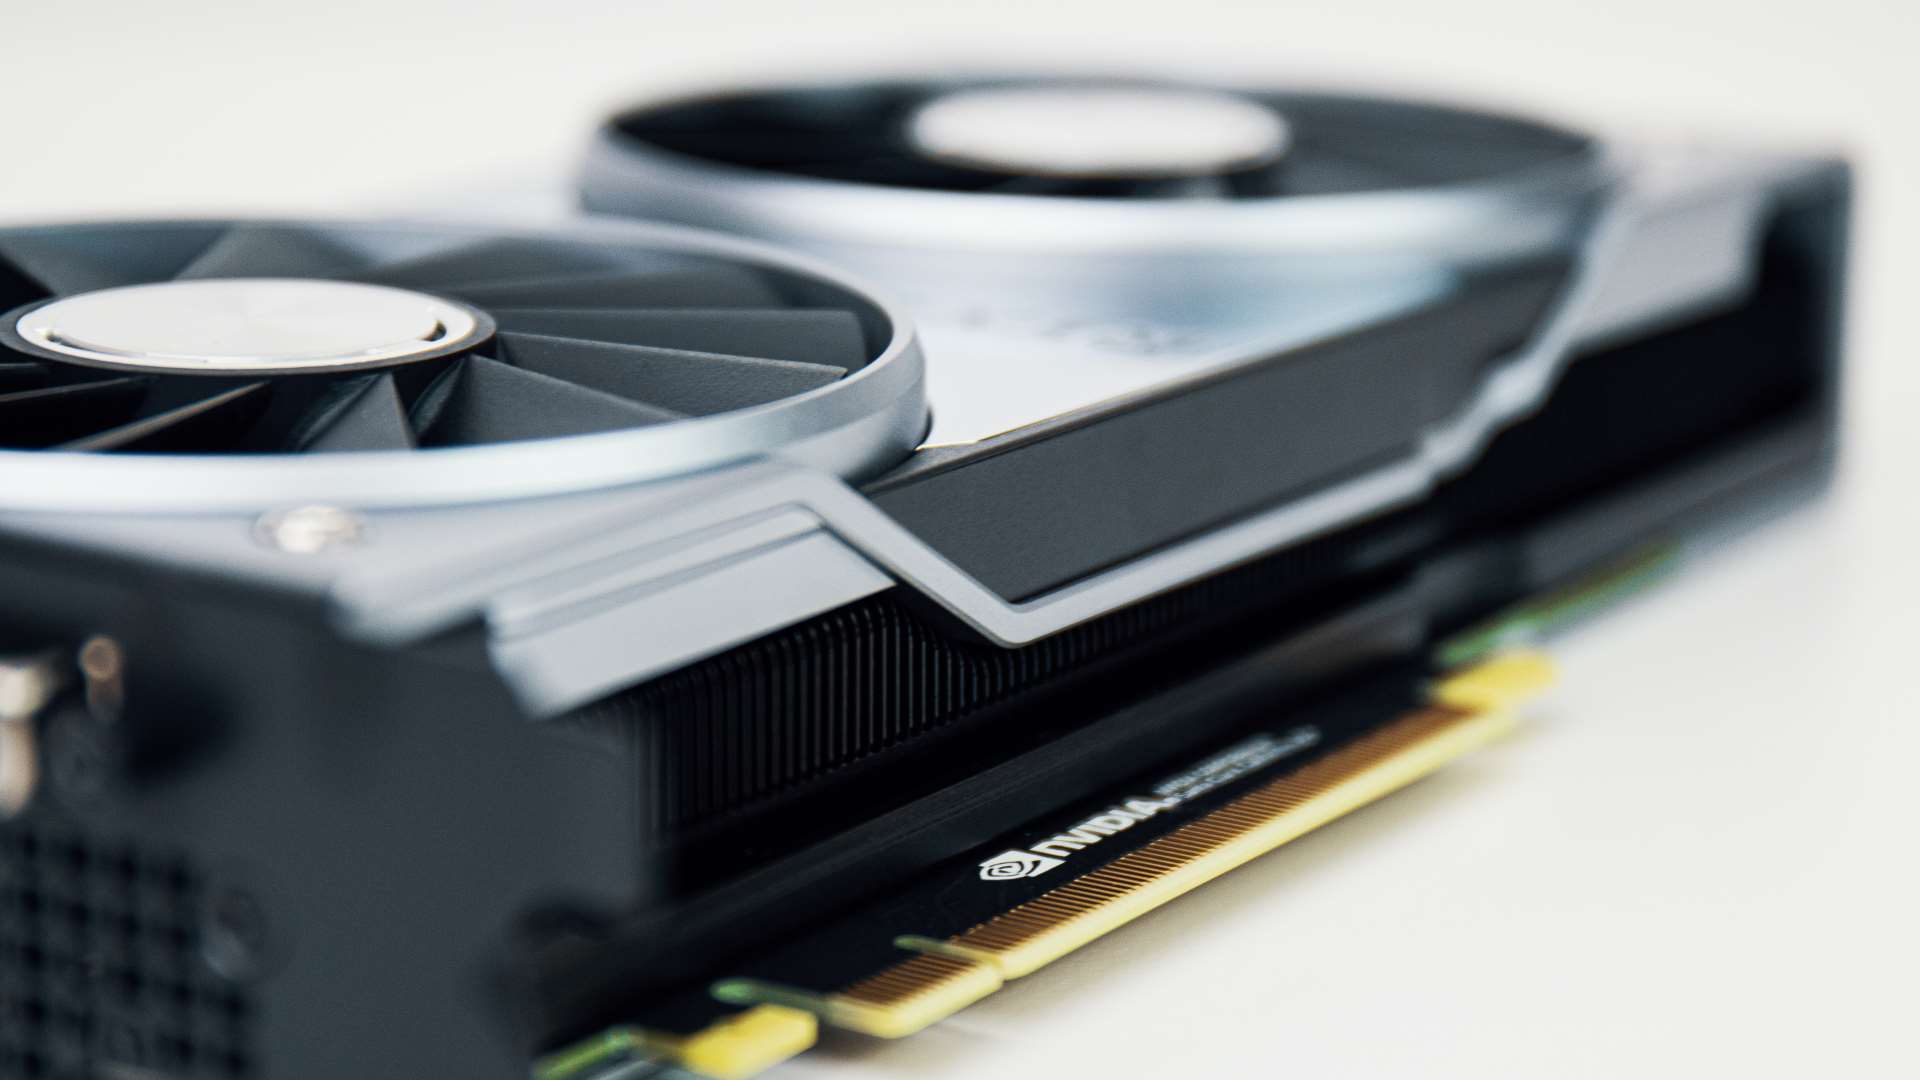 Nvidia နှင့် AMD GPU စျေးနှုန်းများသည် ပုံမှန်သို့ ဖြည်းဖြည်းချင်း ပြန်တက်လာသော်လည်း ဂျာမနီတွင်သာ ဖြစ်သည်။